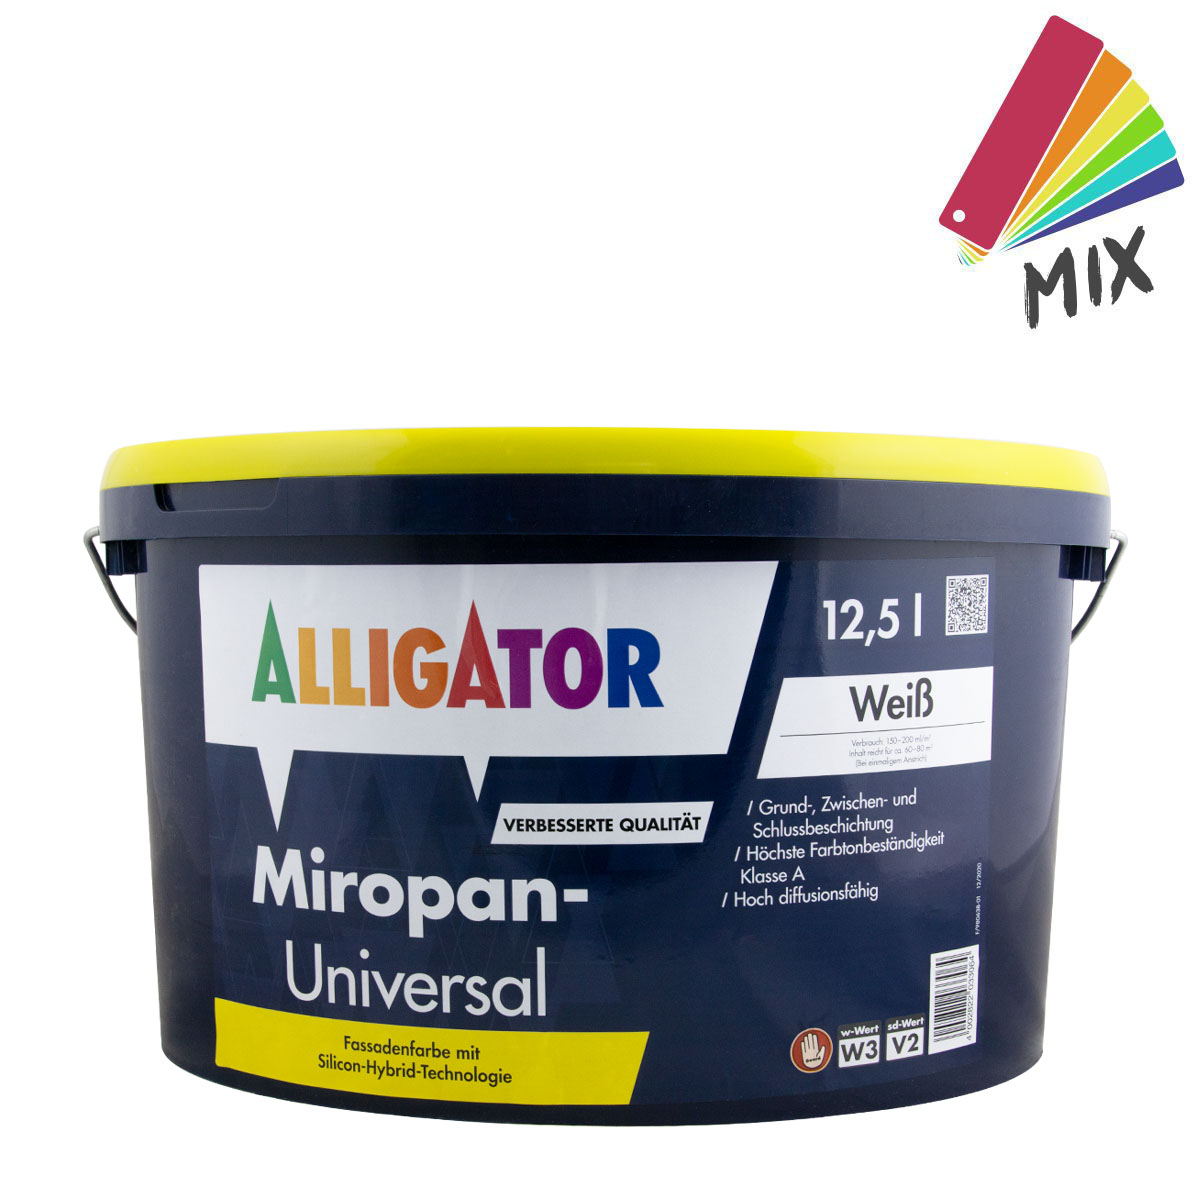 Alligator Miropan-Universal 12,5L wunschfarbton PG S Siliconharz-Fassadenfarbe